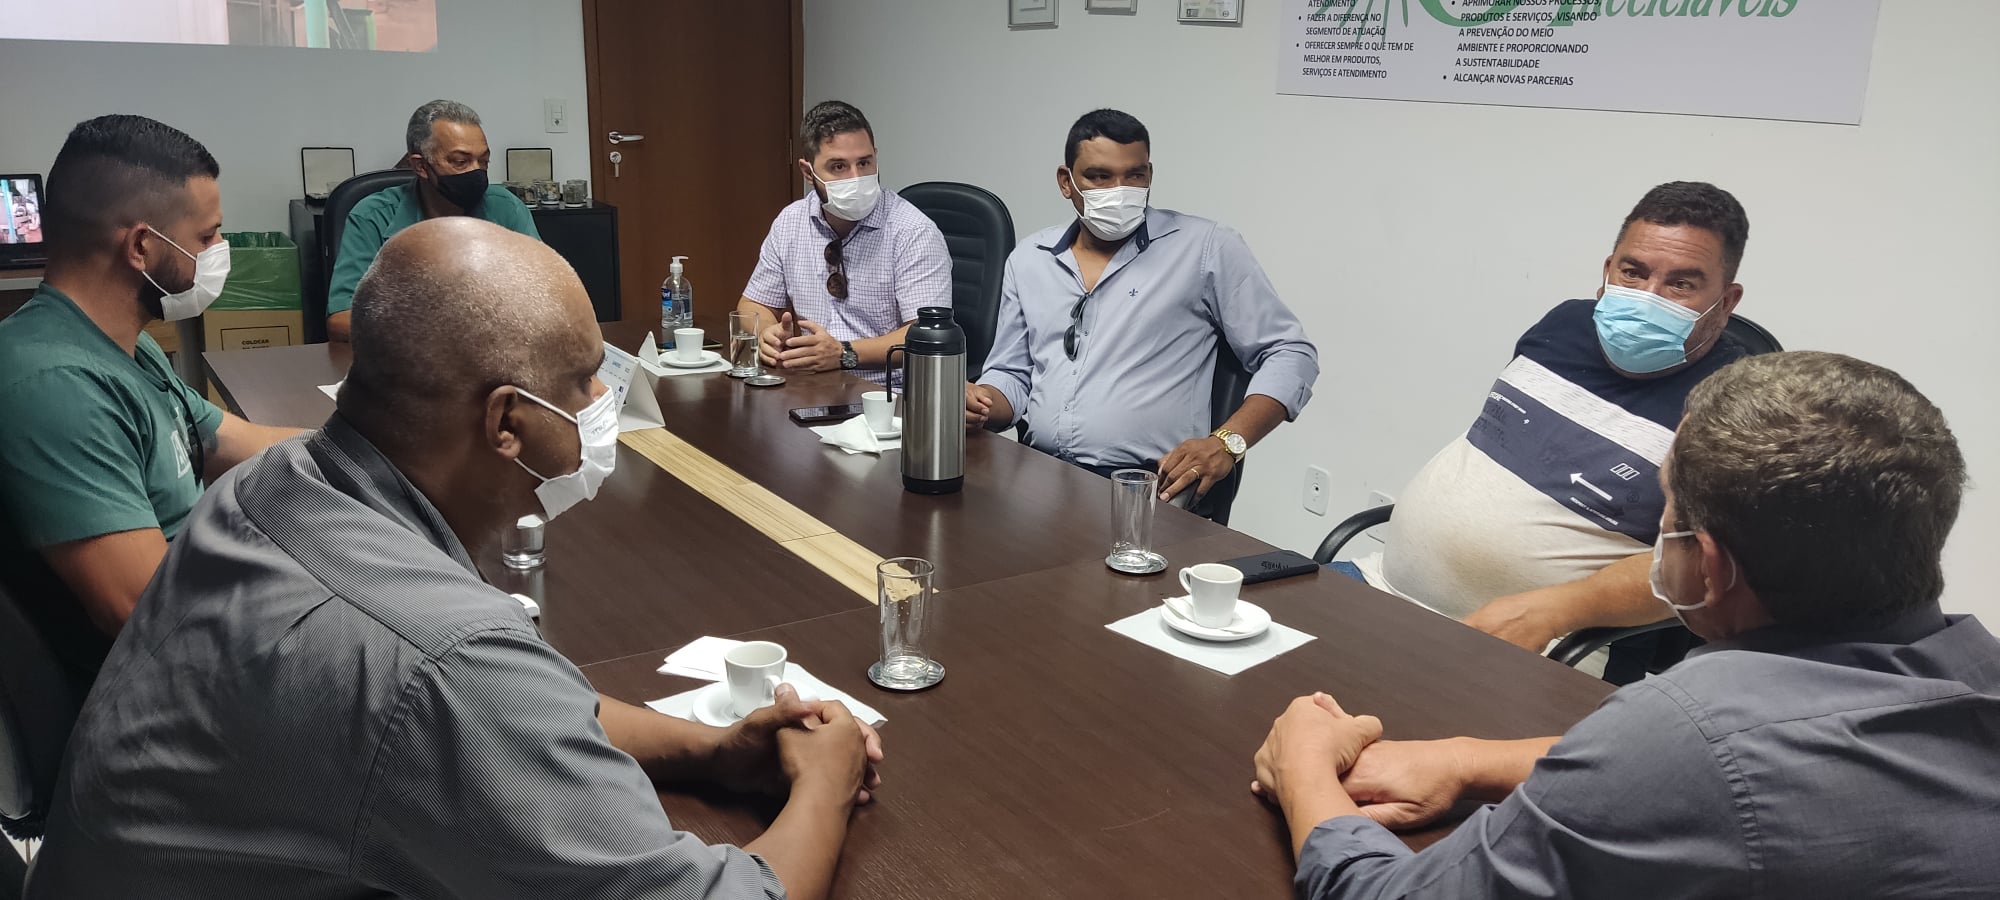 Vereadores visitam aterro sanitário em Brasília e conhecem trabalhos das Cooperativas de Reciclagem